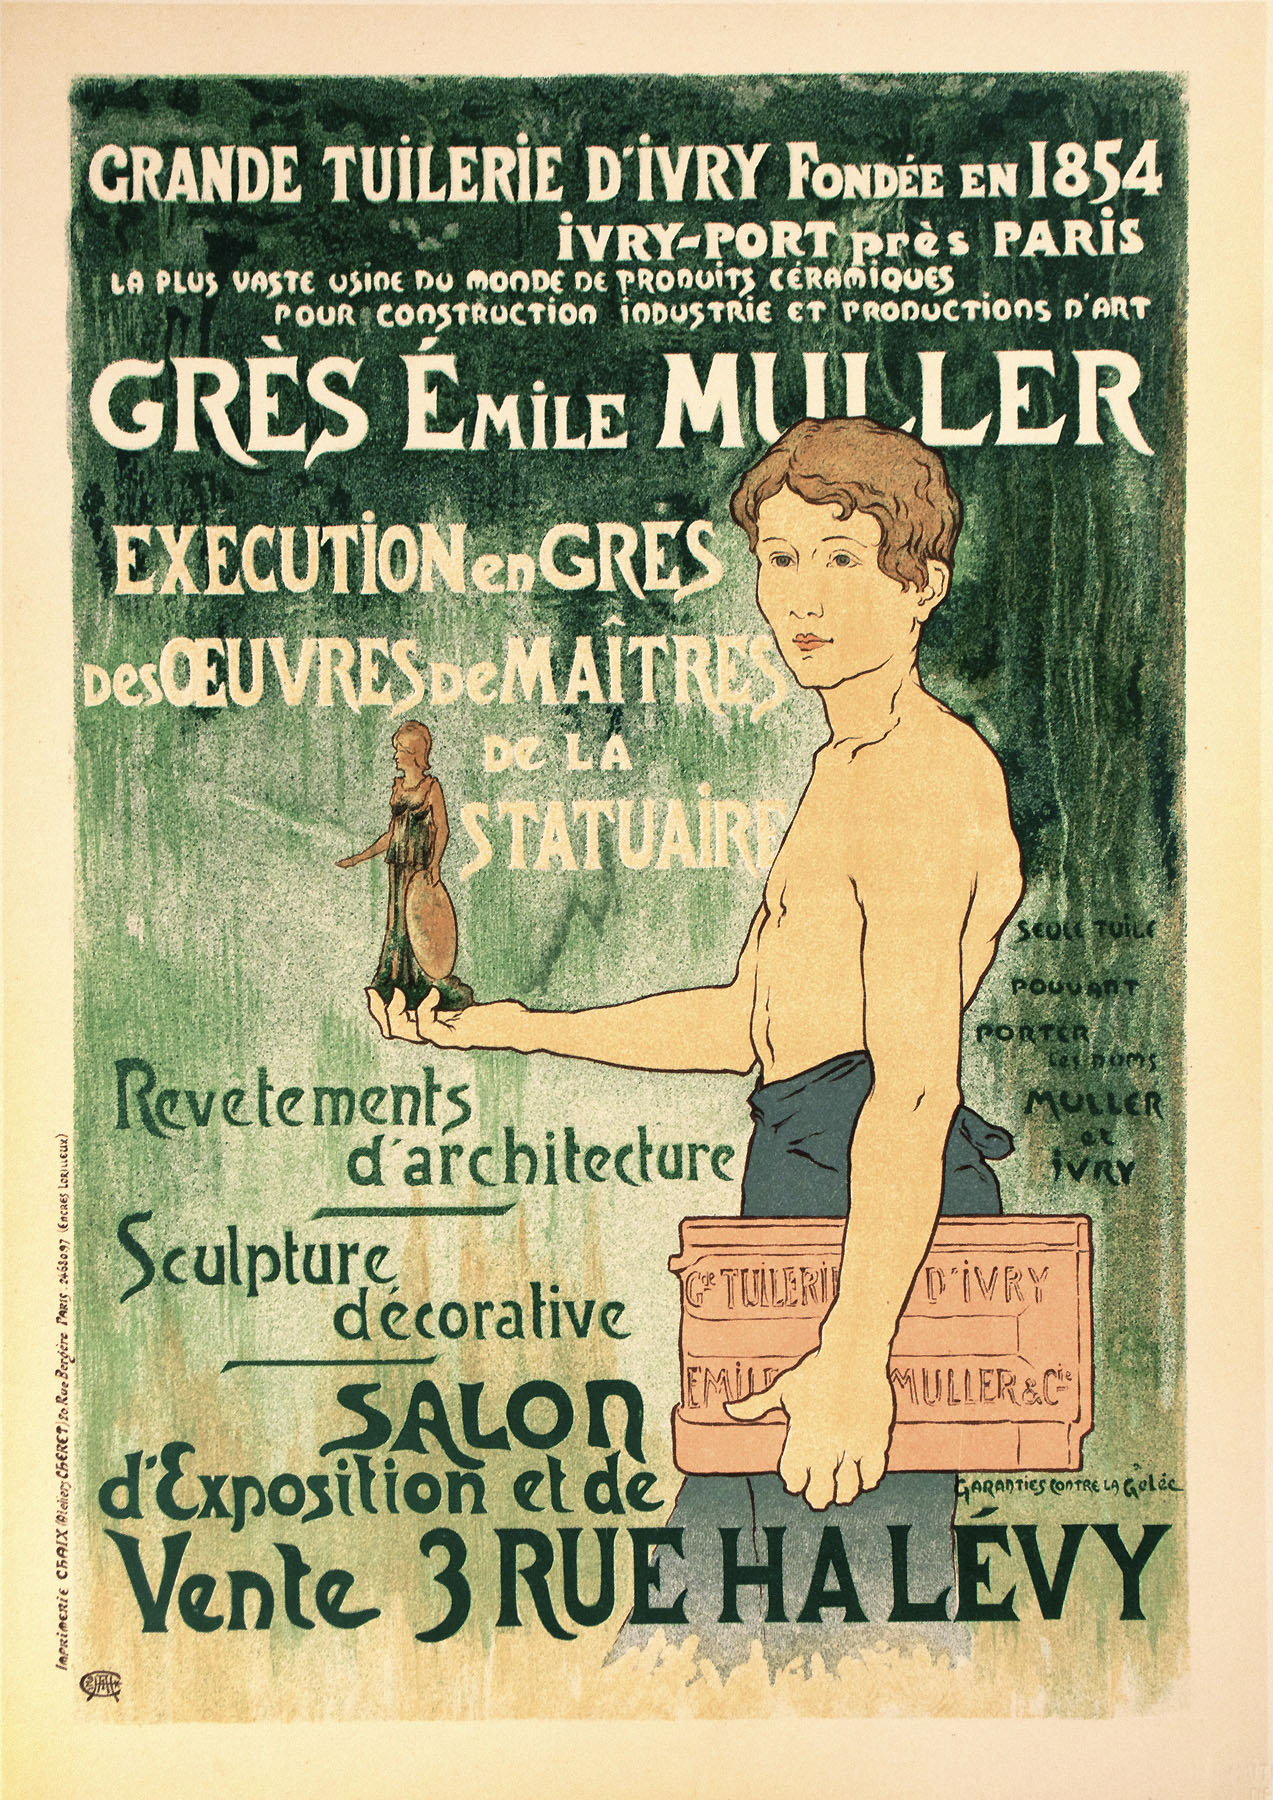 Gres Emile Muller, "Maitres de l'Affiche" plate 131